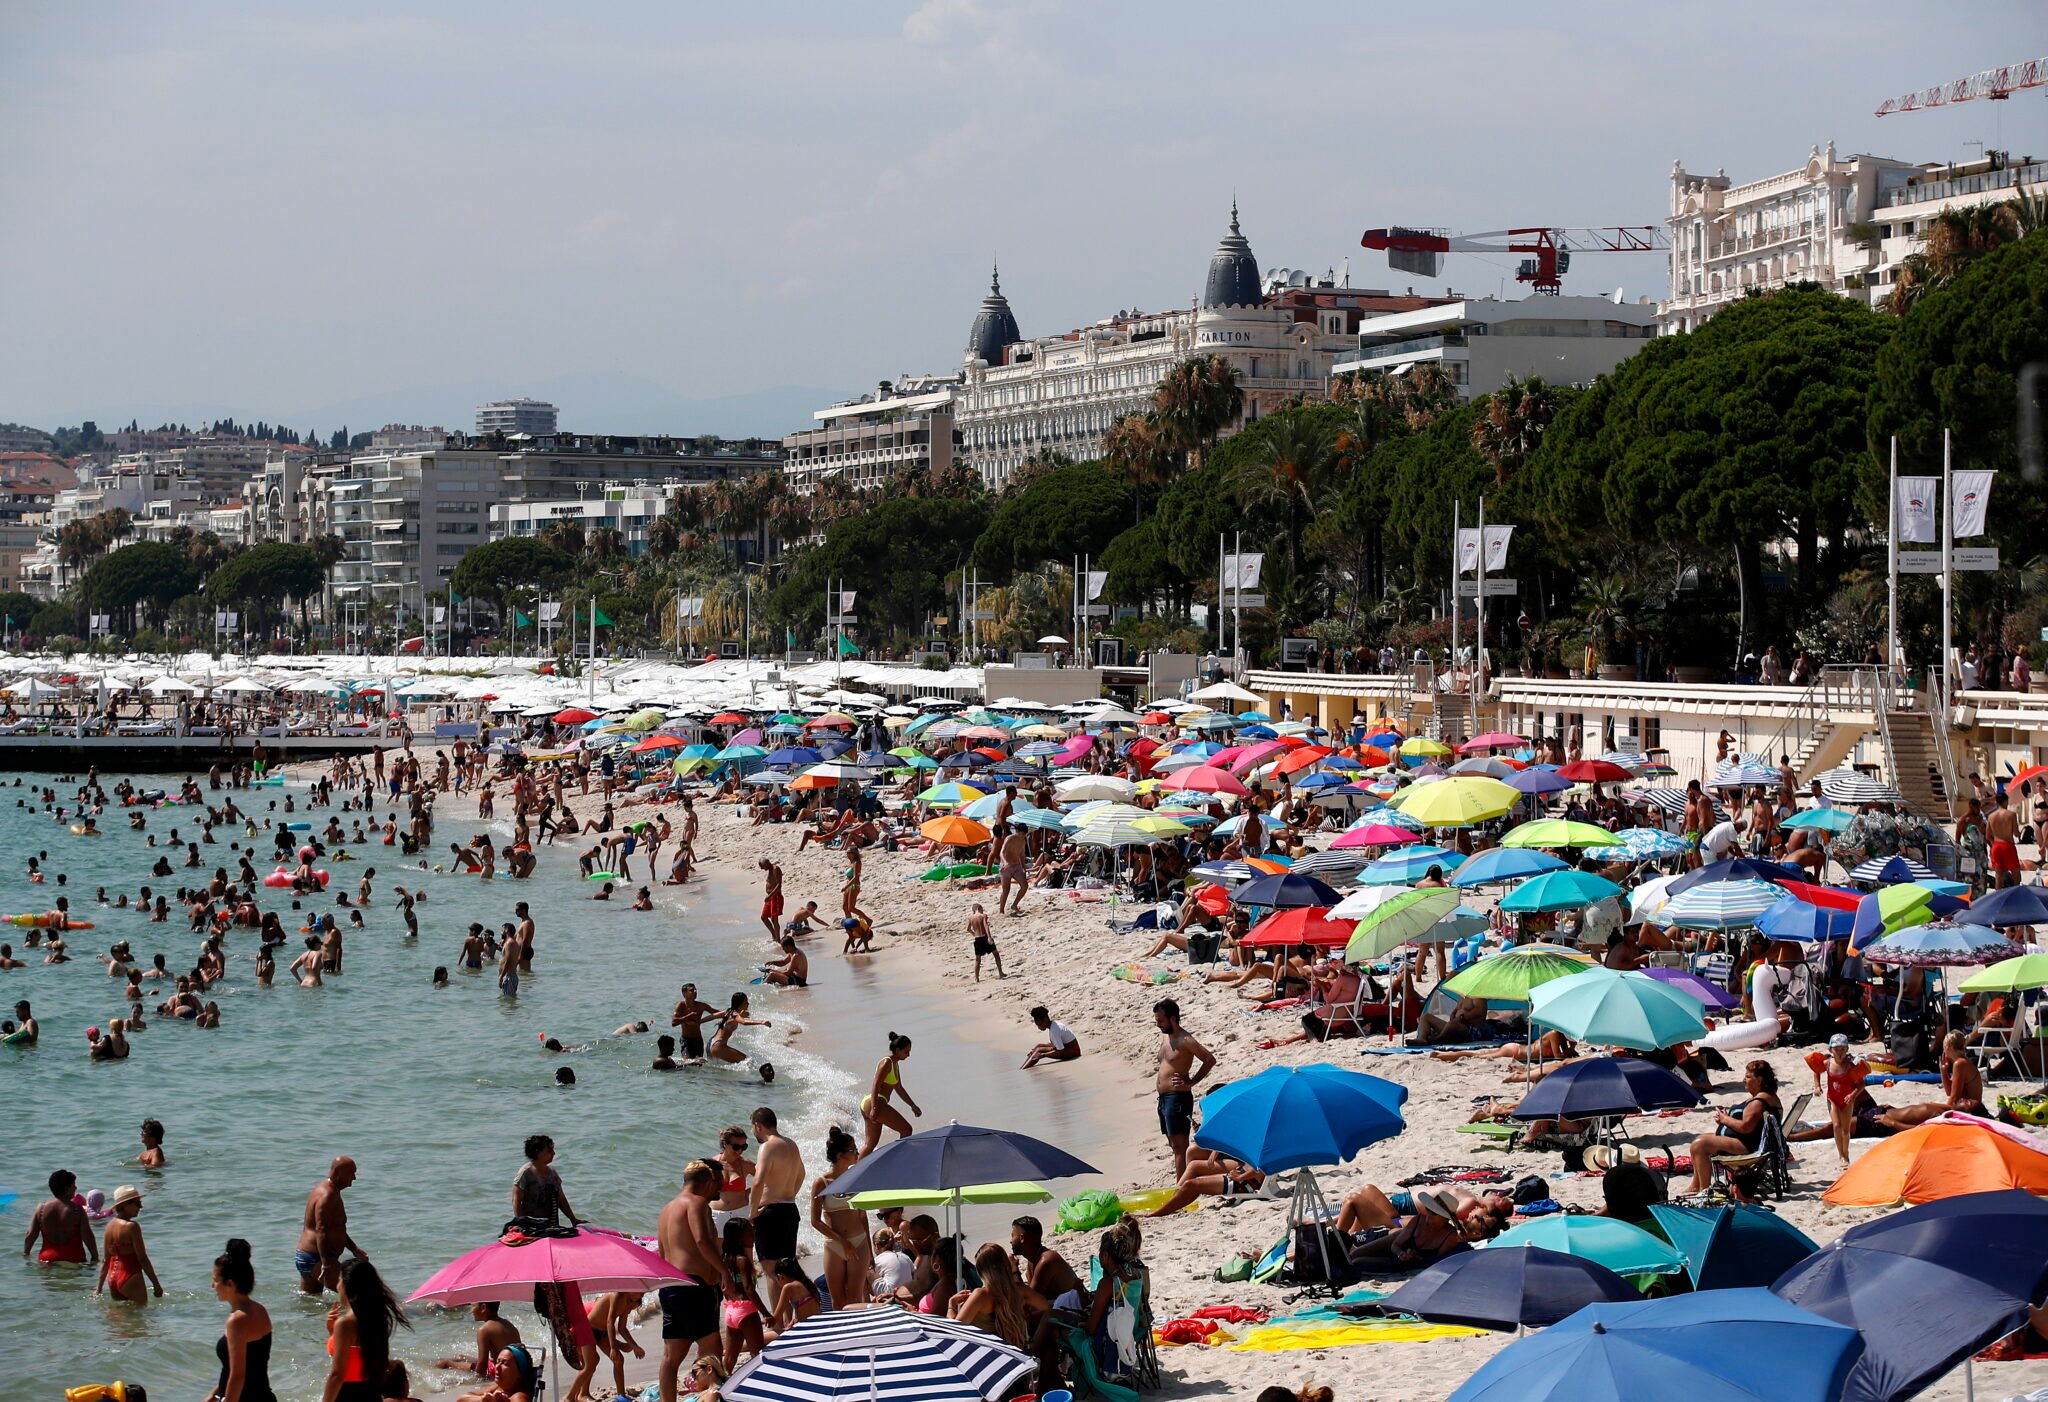 Plaża we francuskim Cannes wypełniła się tłumami turystów. fot. EPA/SEBASTIEN NOGIER